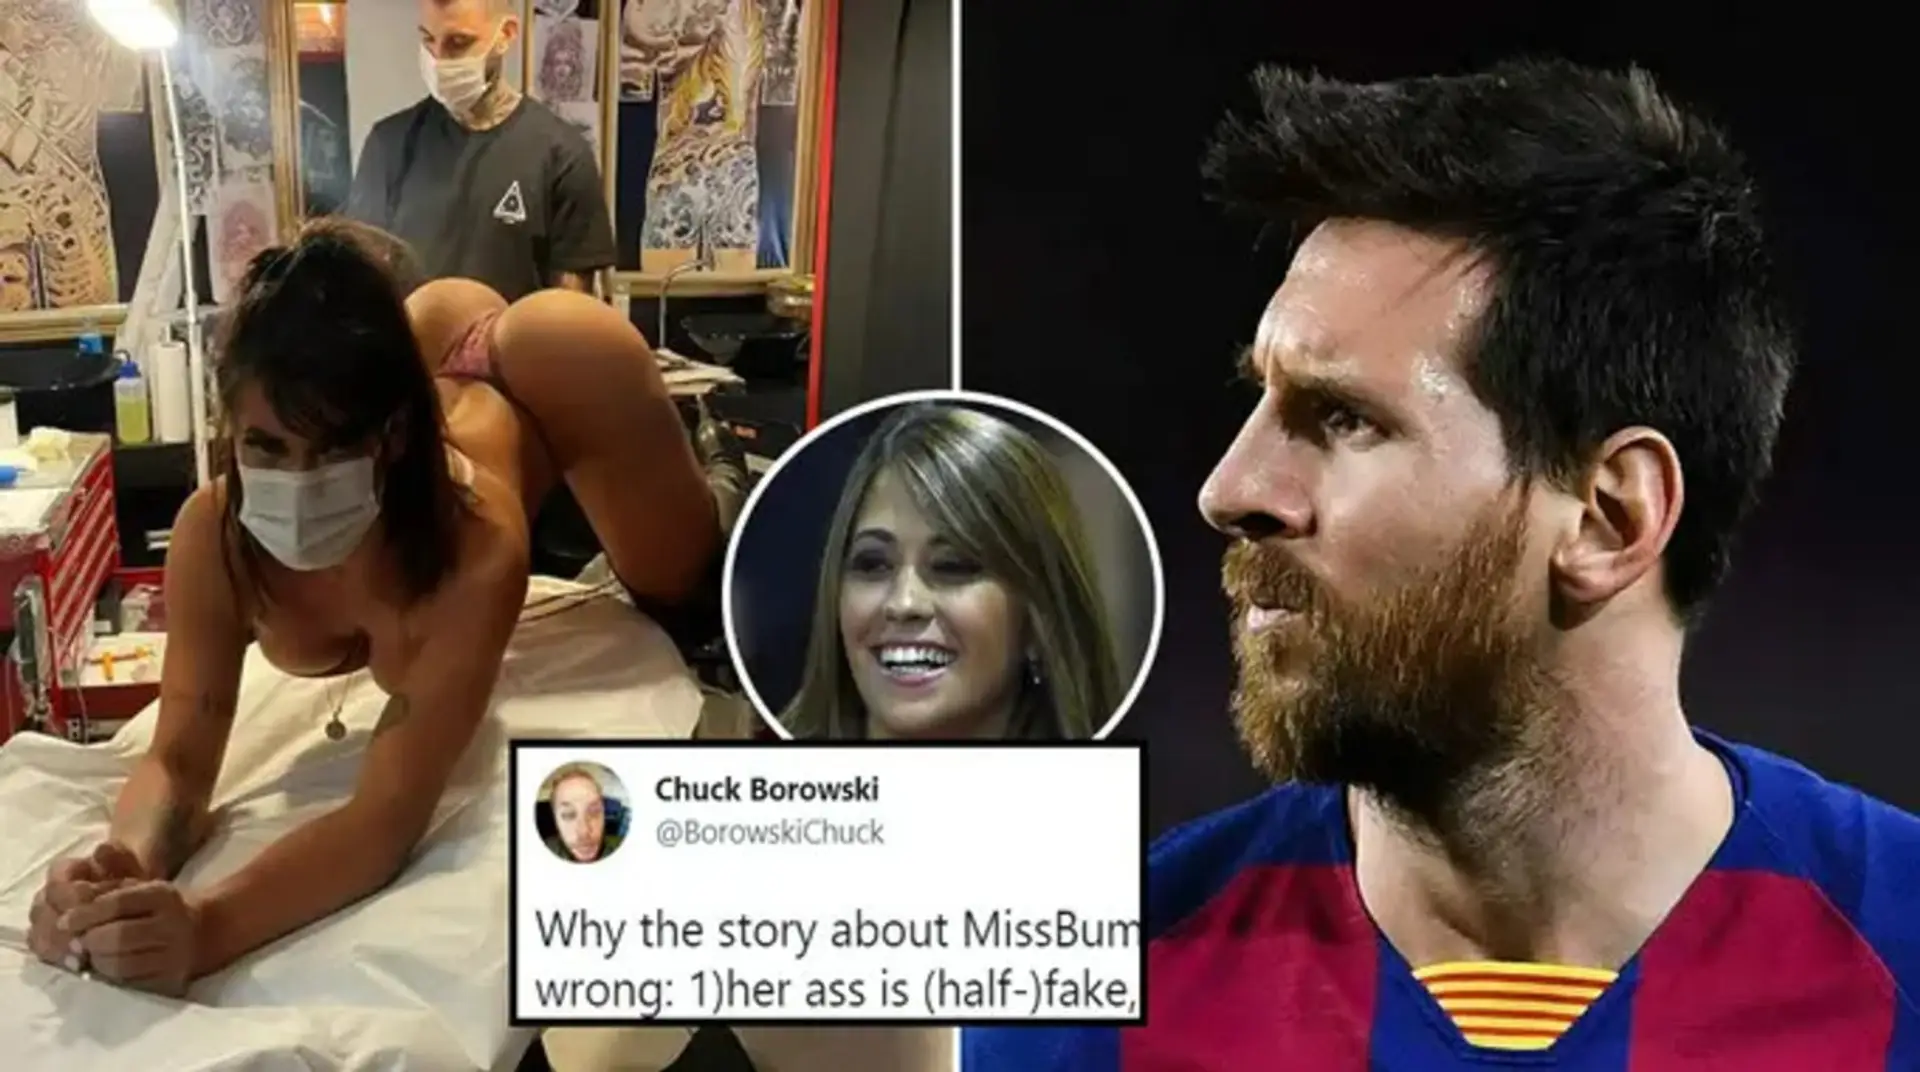 'Primero, este c*** es falso': fan del Barça da 4 razones por las que sale tan mal con el tatuaje de Messi de Miss BumBum